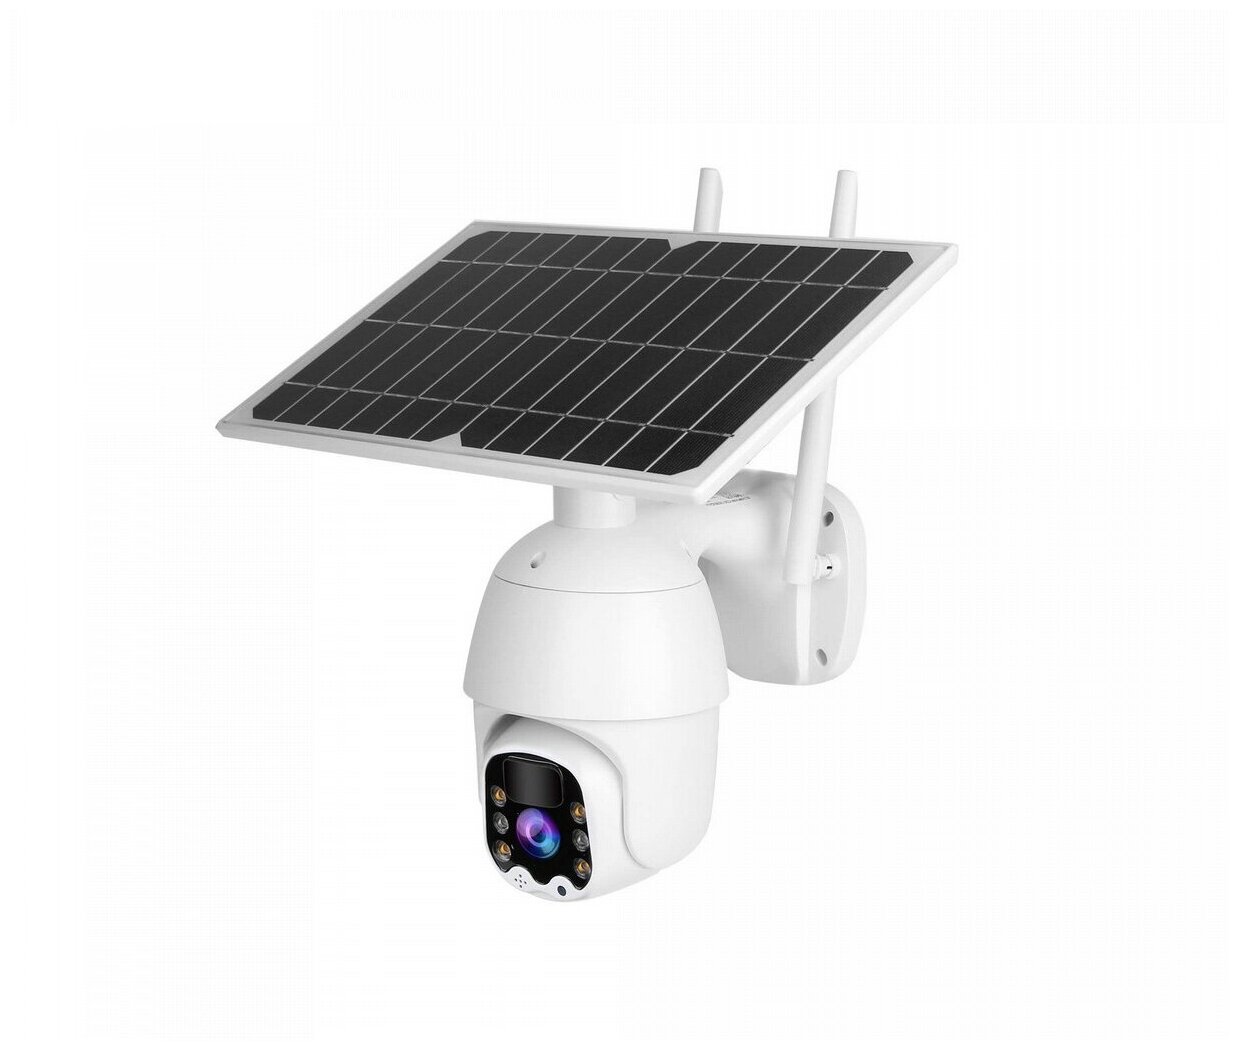 Линк 05-4-GS Соляр (РОС) (S26296LU) - 4G автономная камера на солнечной батарее - видеокамера с сим картой / автономная камера на солнечной батарее